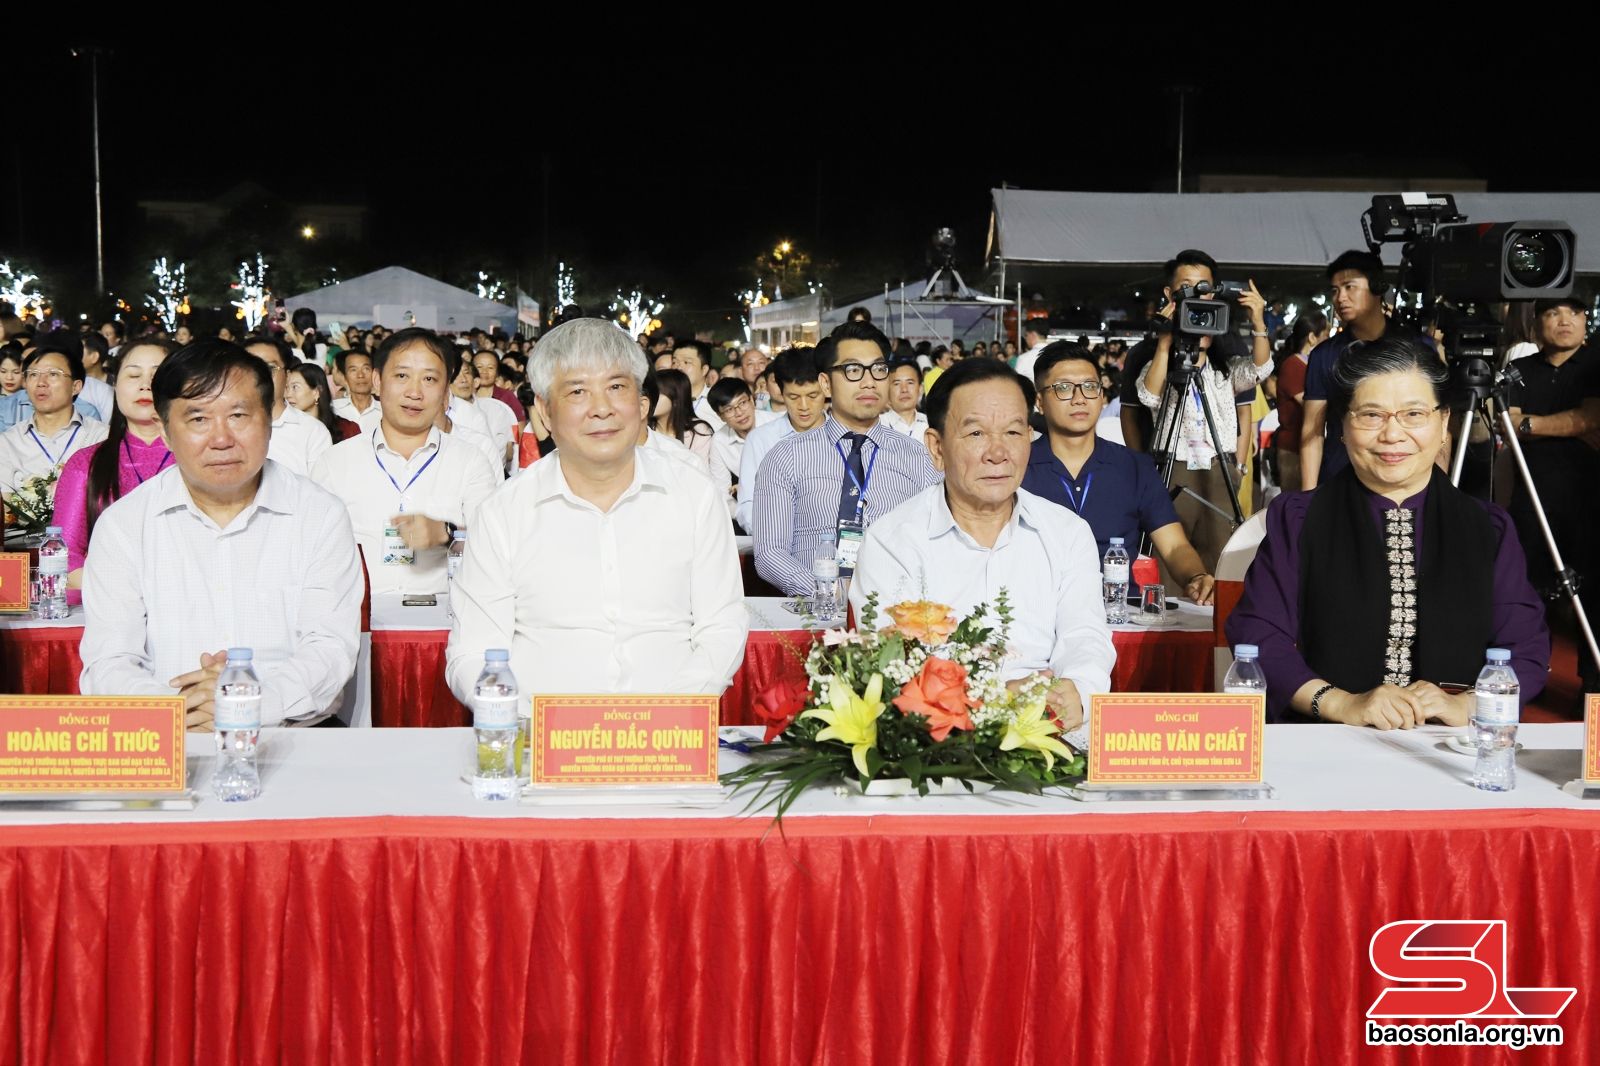 Các đồng chí nguyên là lãnh đạo Trung ương và nguyên lãnh đạo tỉnh Sơn La dự lễ công bố.

